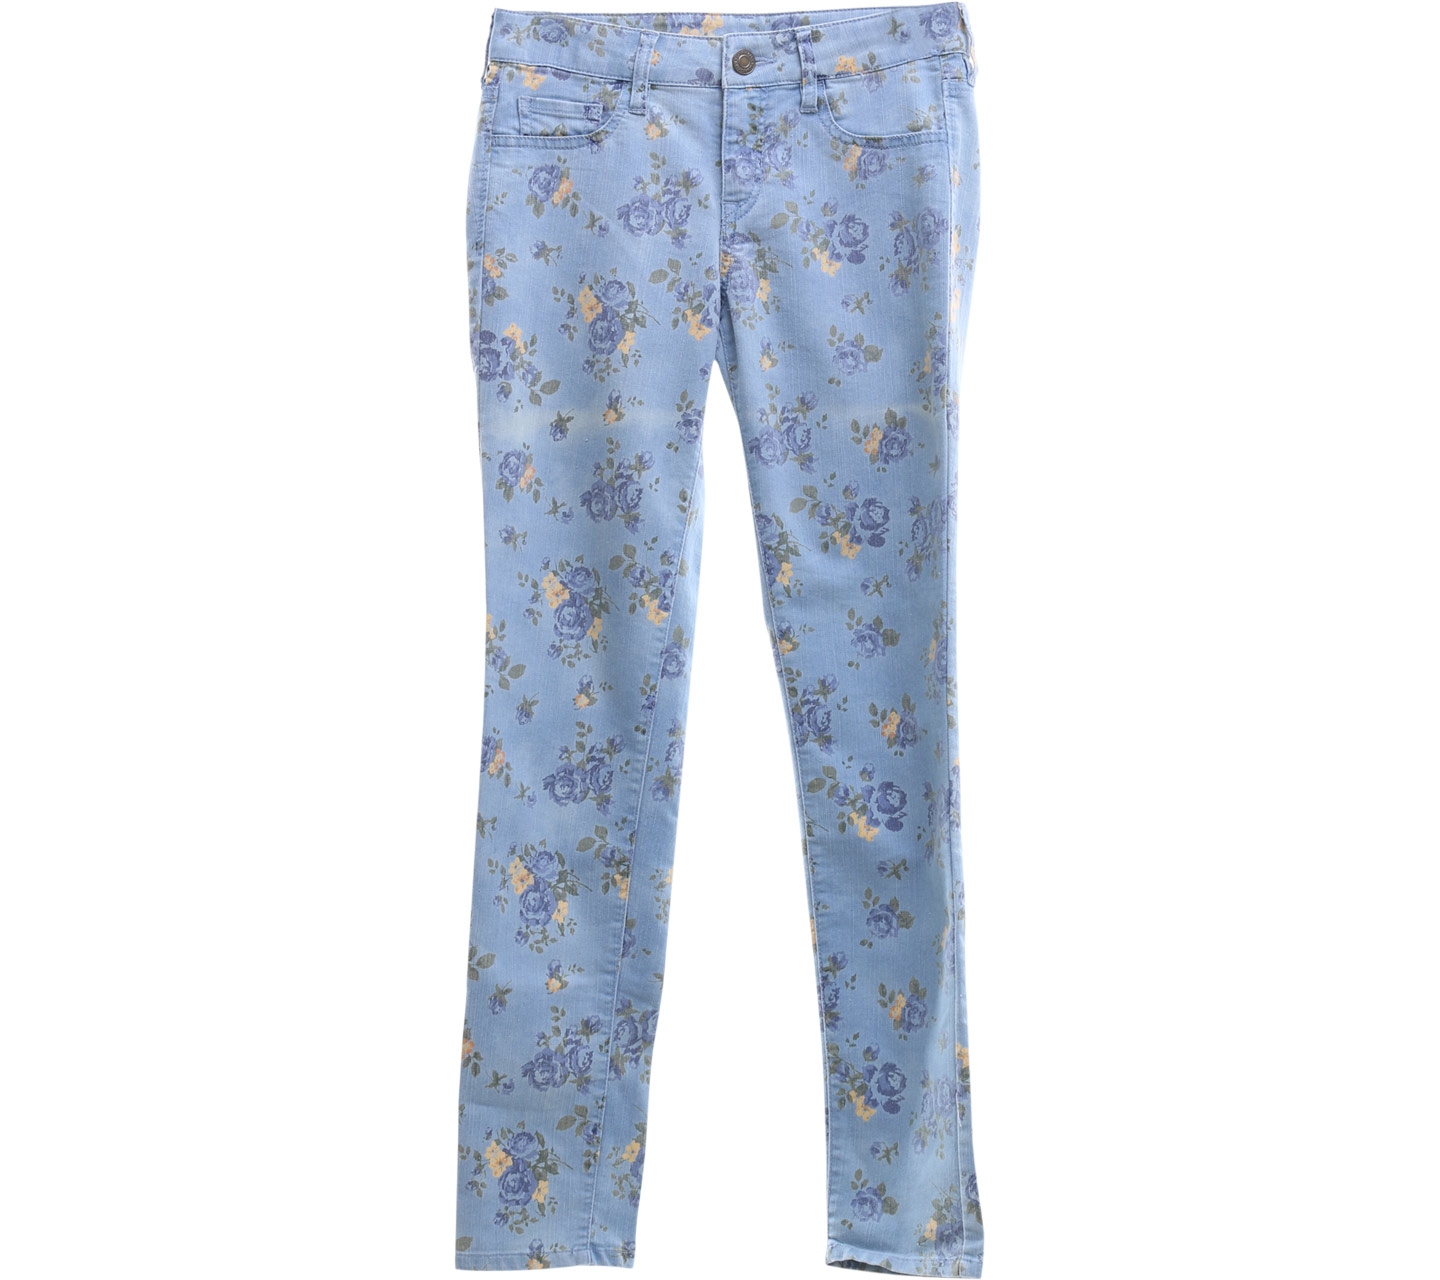 Lowrys Farm Floral Blue Long Pants